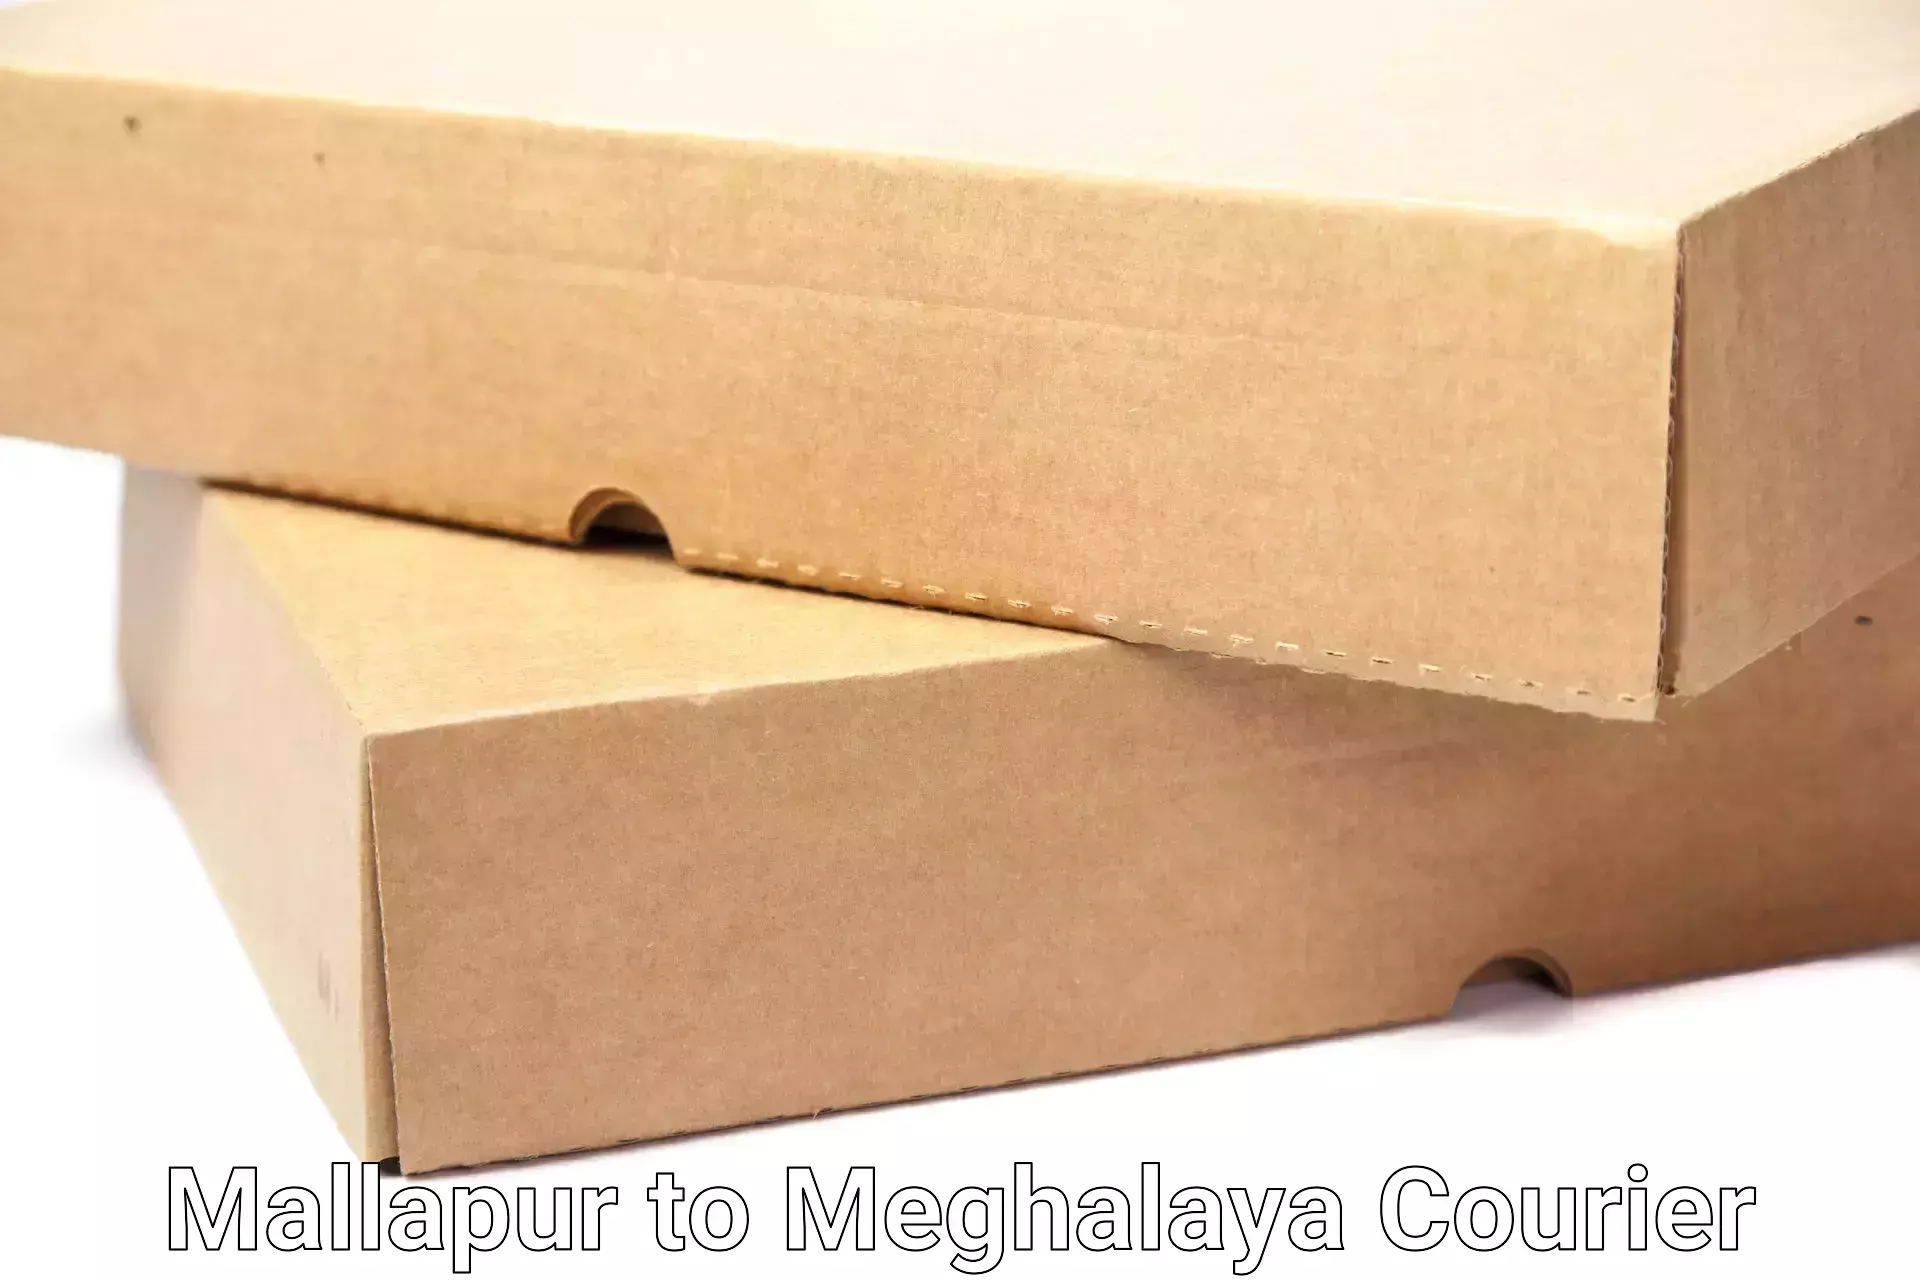 Furniture moving plans Mallapur to Meghalaya